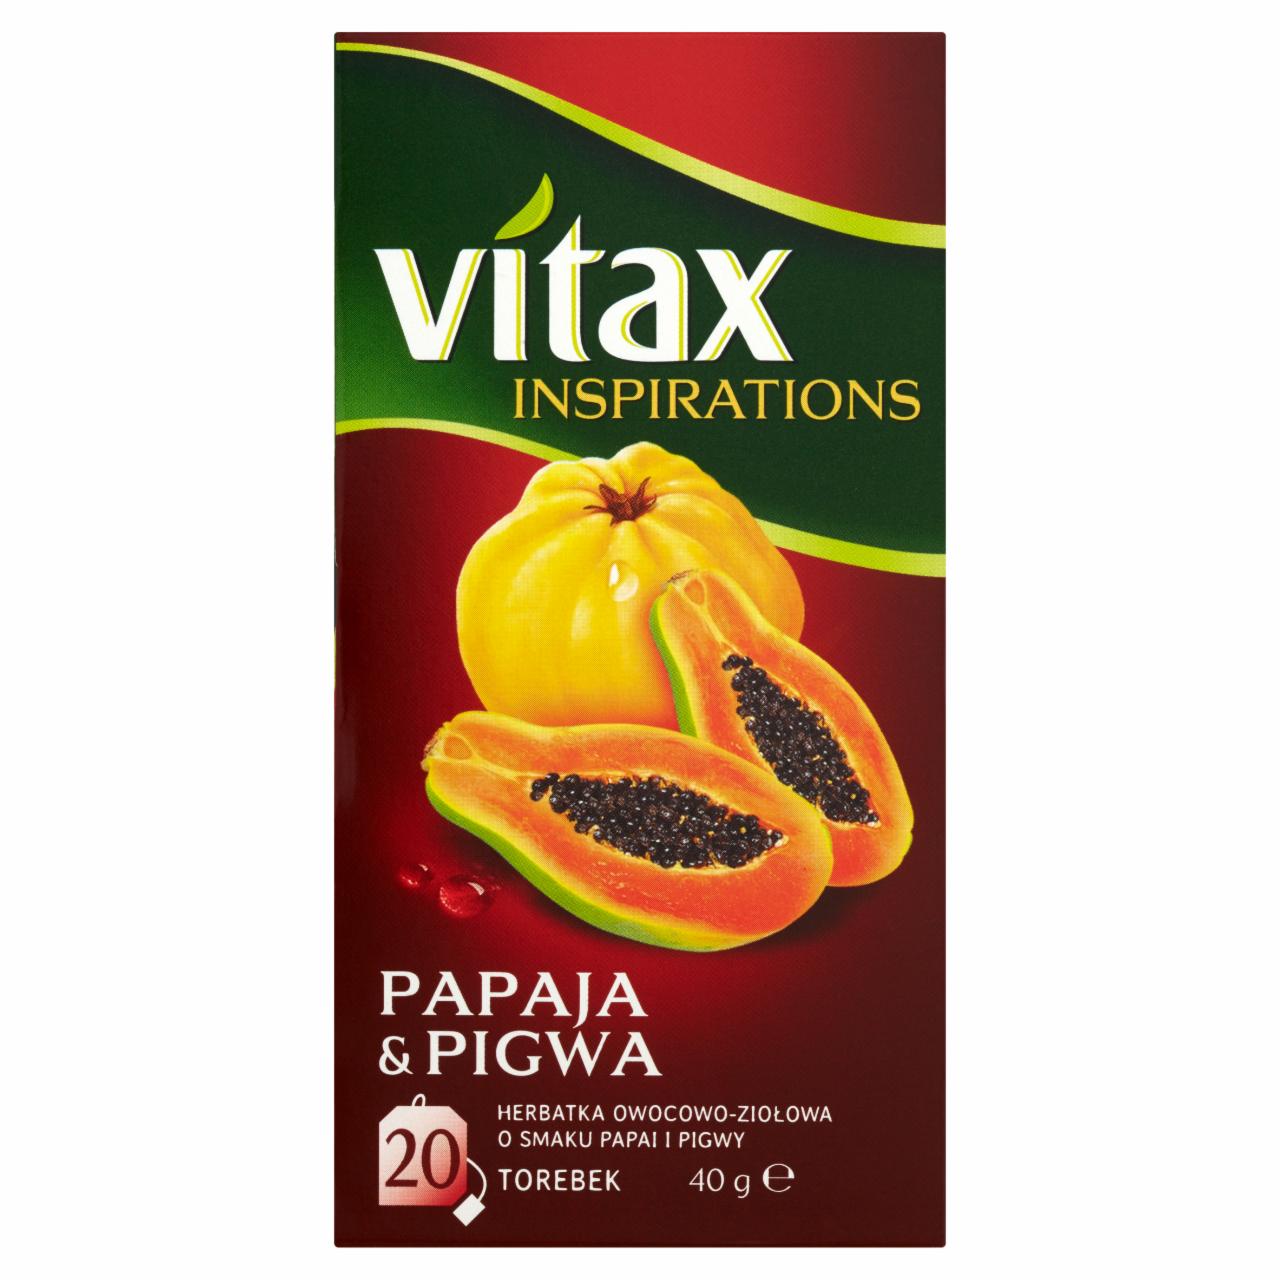 Zdjęcia - Vitax Inspirations Papaja & Pigwa Herbatka owocowo-ziołowa 40 g (20 torebek)